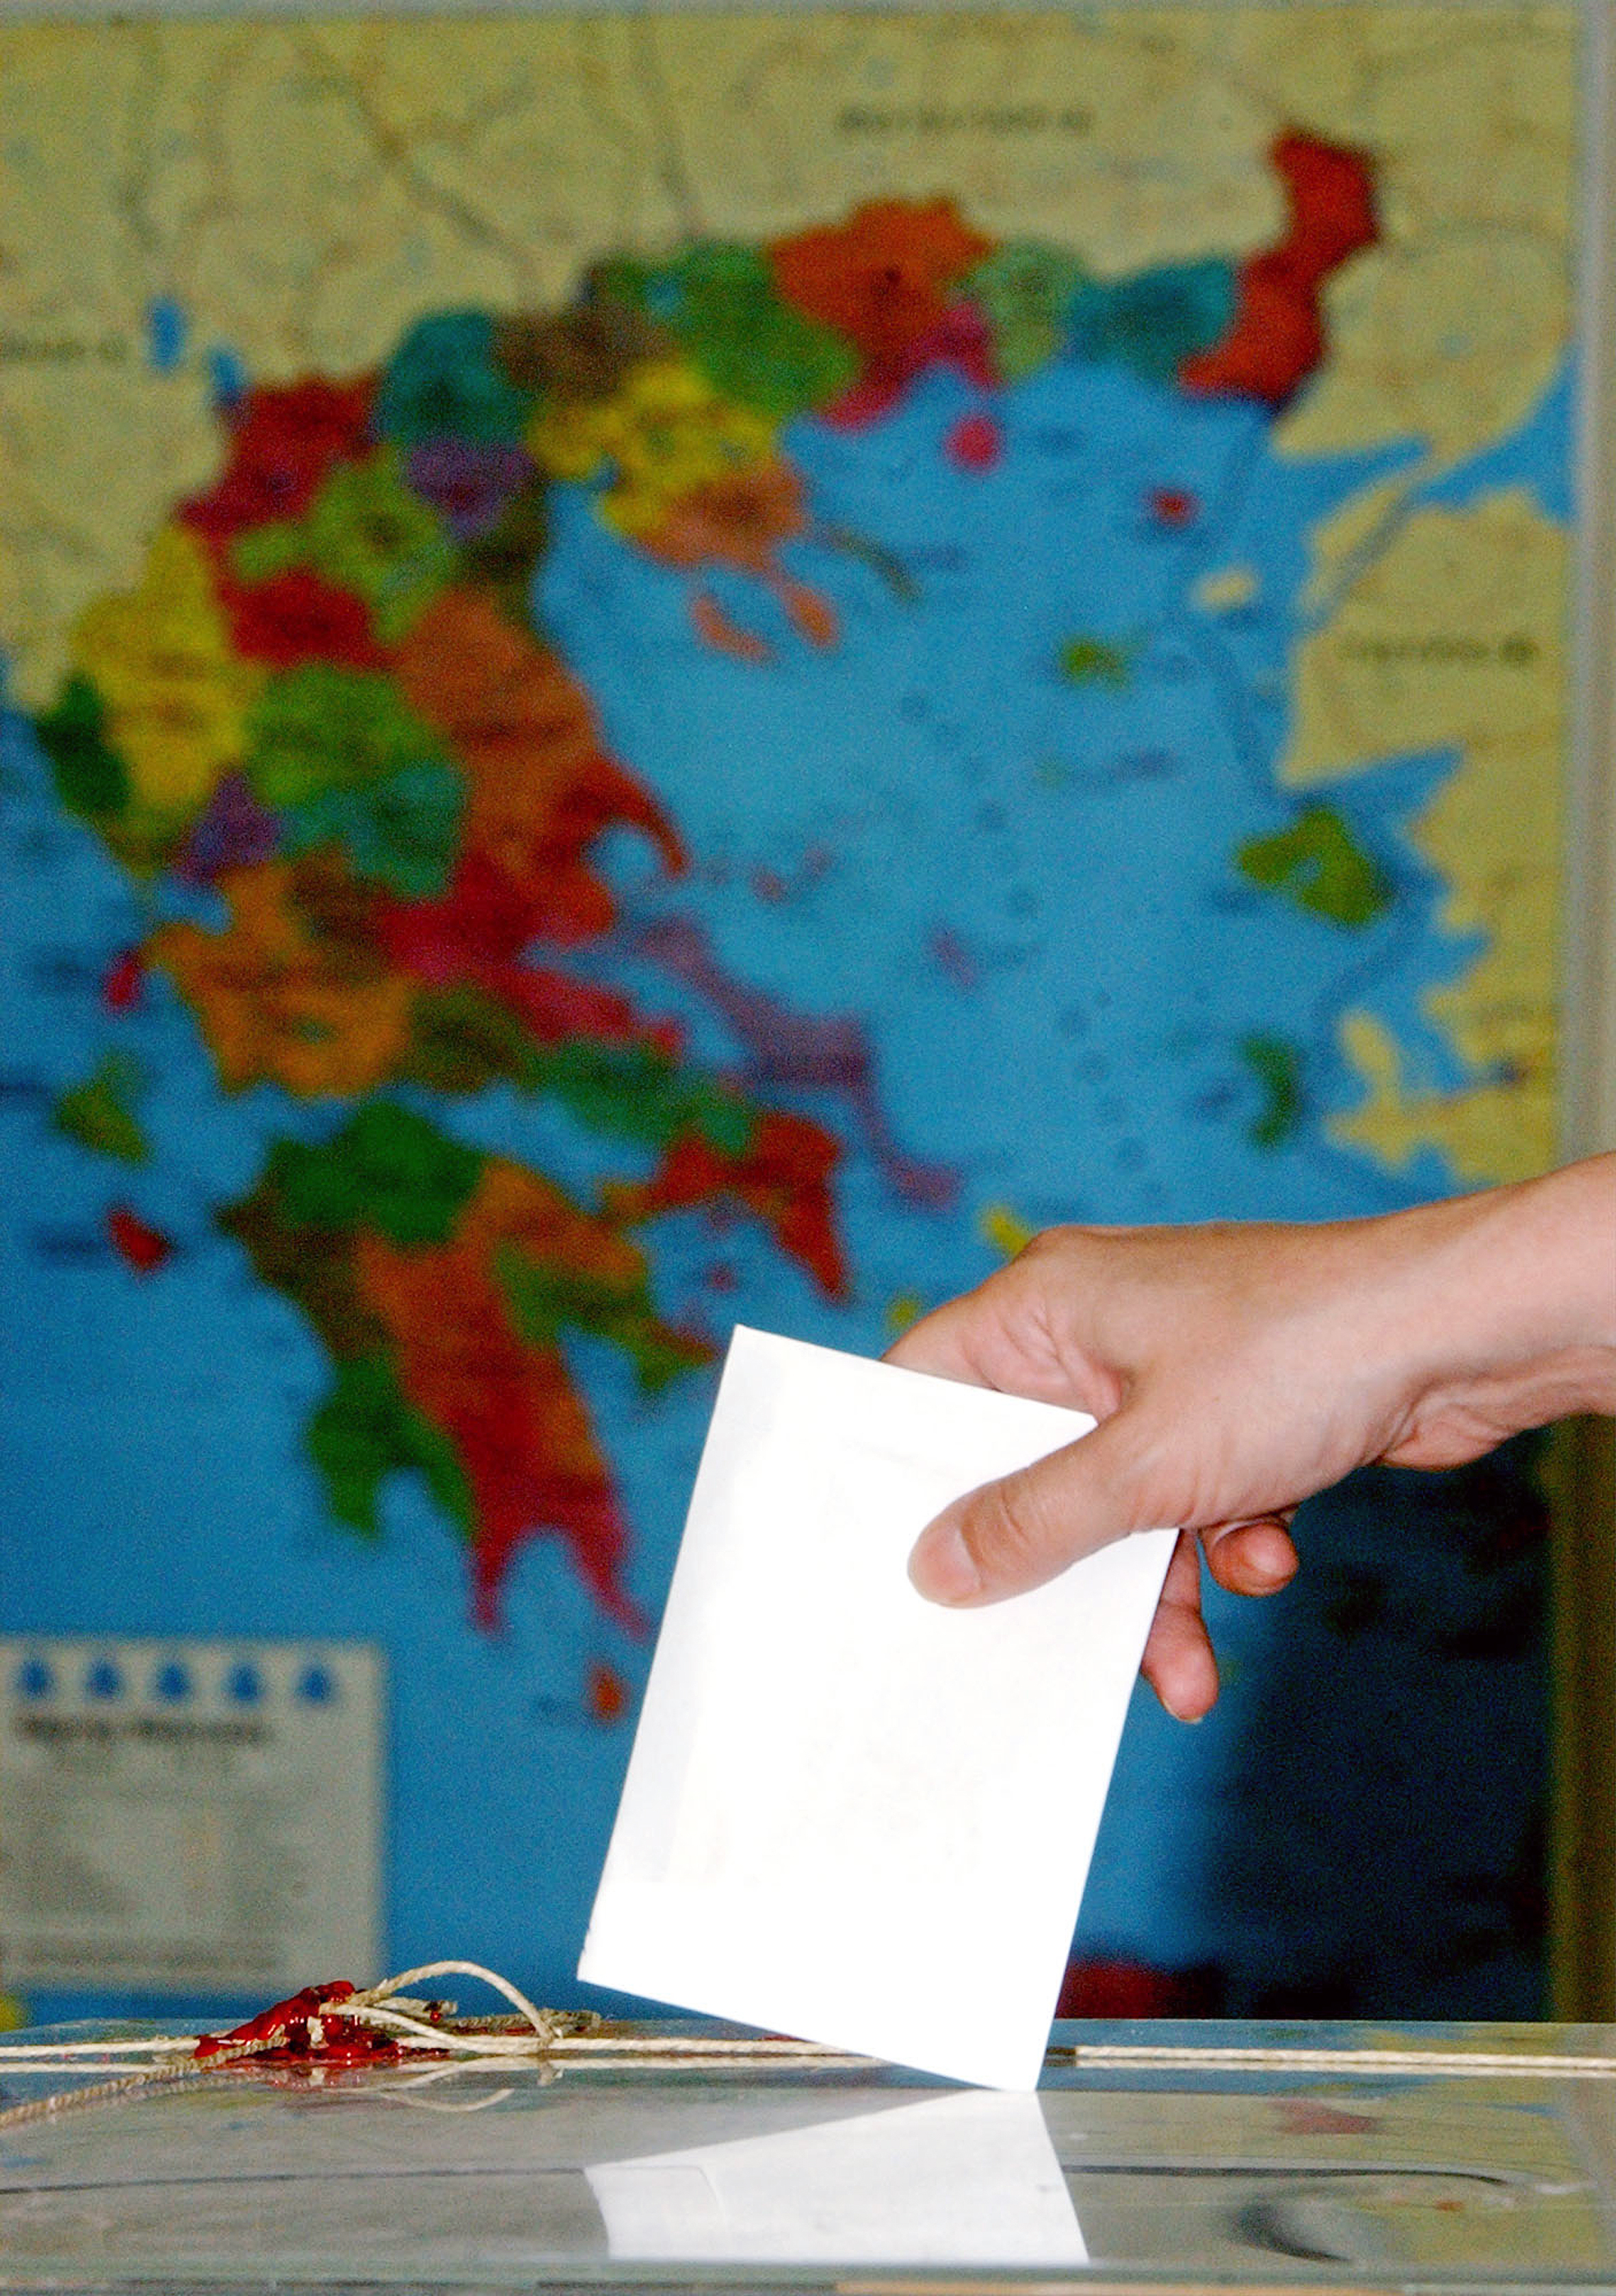 Μέχρι το τέλος του έτους η αλλαγή εκλογικού νόμου στην αυτοδιοίκηση